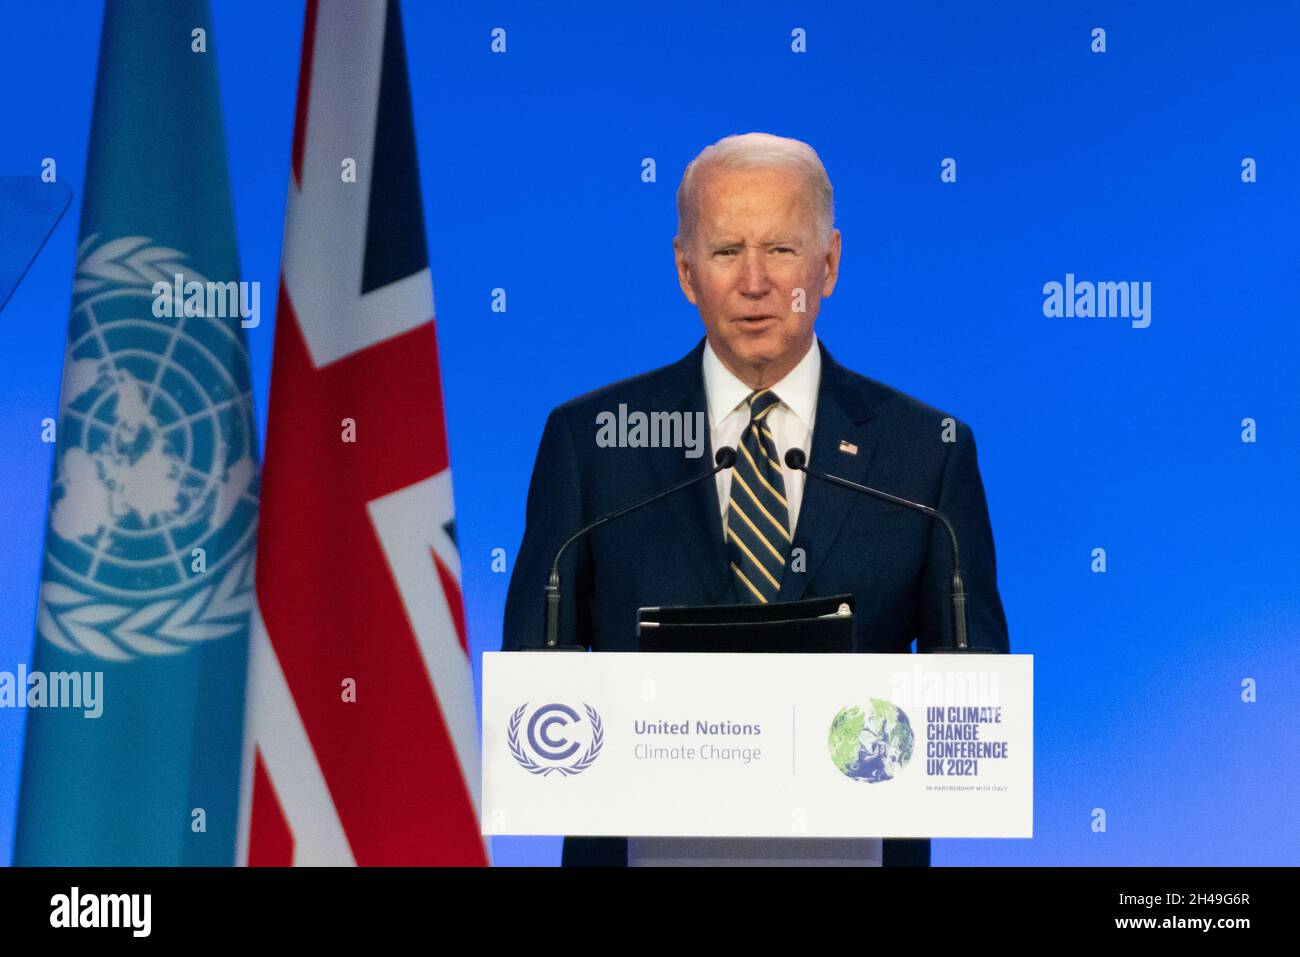 Glasgow, Écosse, Royaume-Uni.1er novembre 2021.LE président AMÉRICAIN Joe Biden prononce un discours lors de la conférence COP26 des Nations Unies sur le changement climatique à Glasgow.Iain Masterton/Alay Live News. Banque D'Images